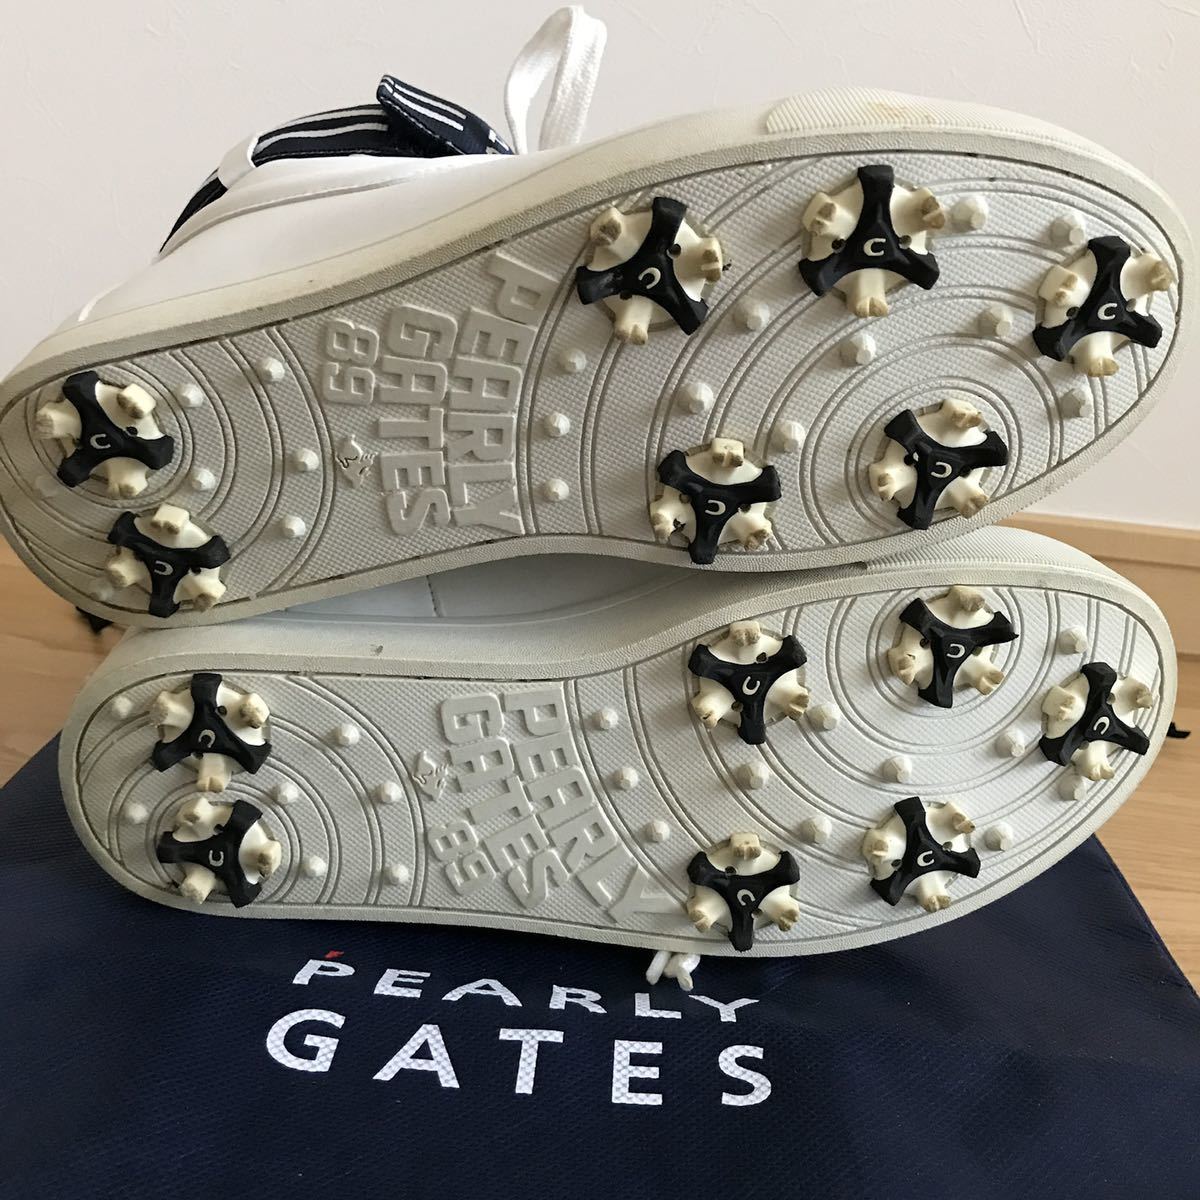  прекрасный товар Pearly Gates - ikatto Golf шиповки спортивные туфли 23.5 см белый Logo туфли для гольфа 